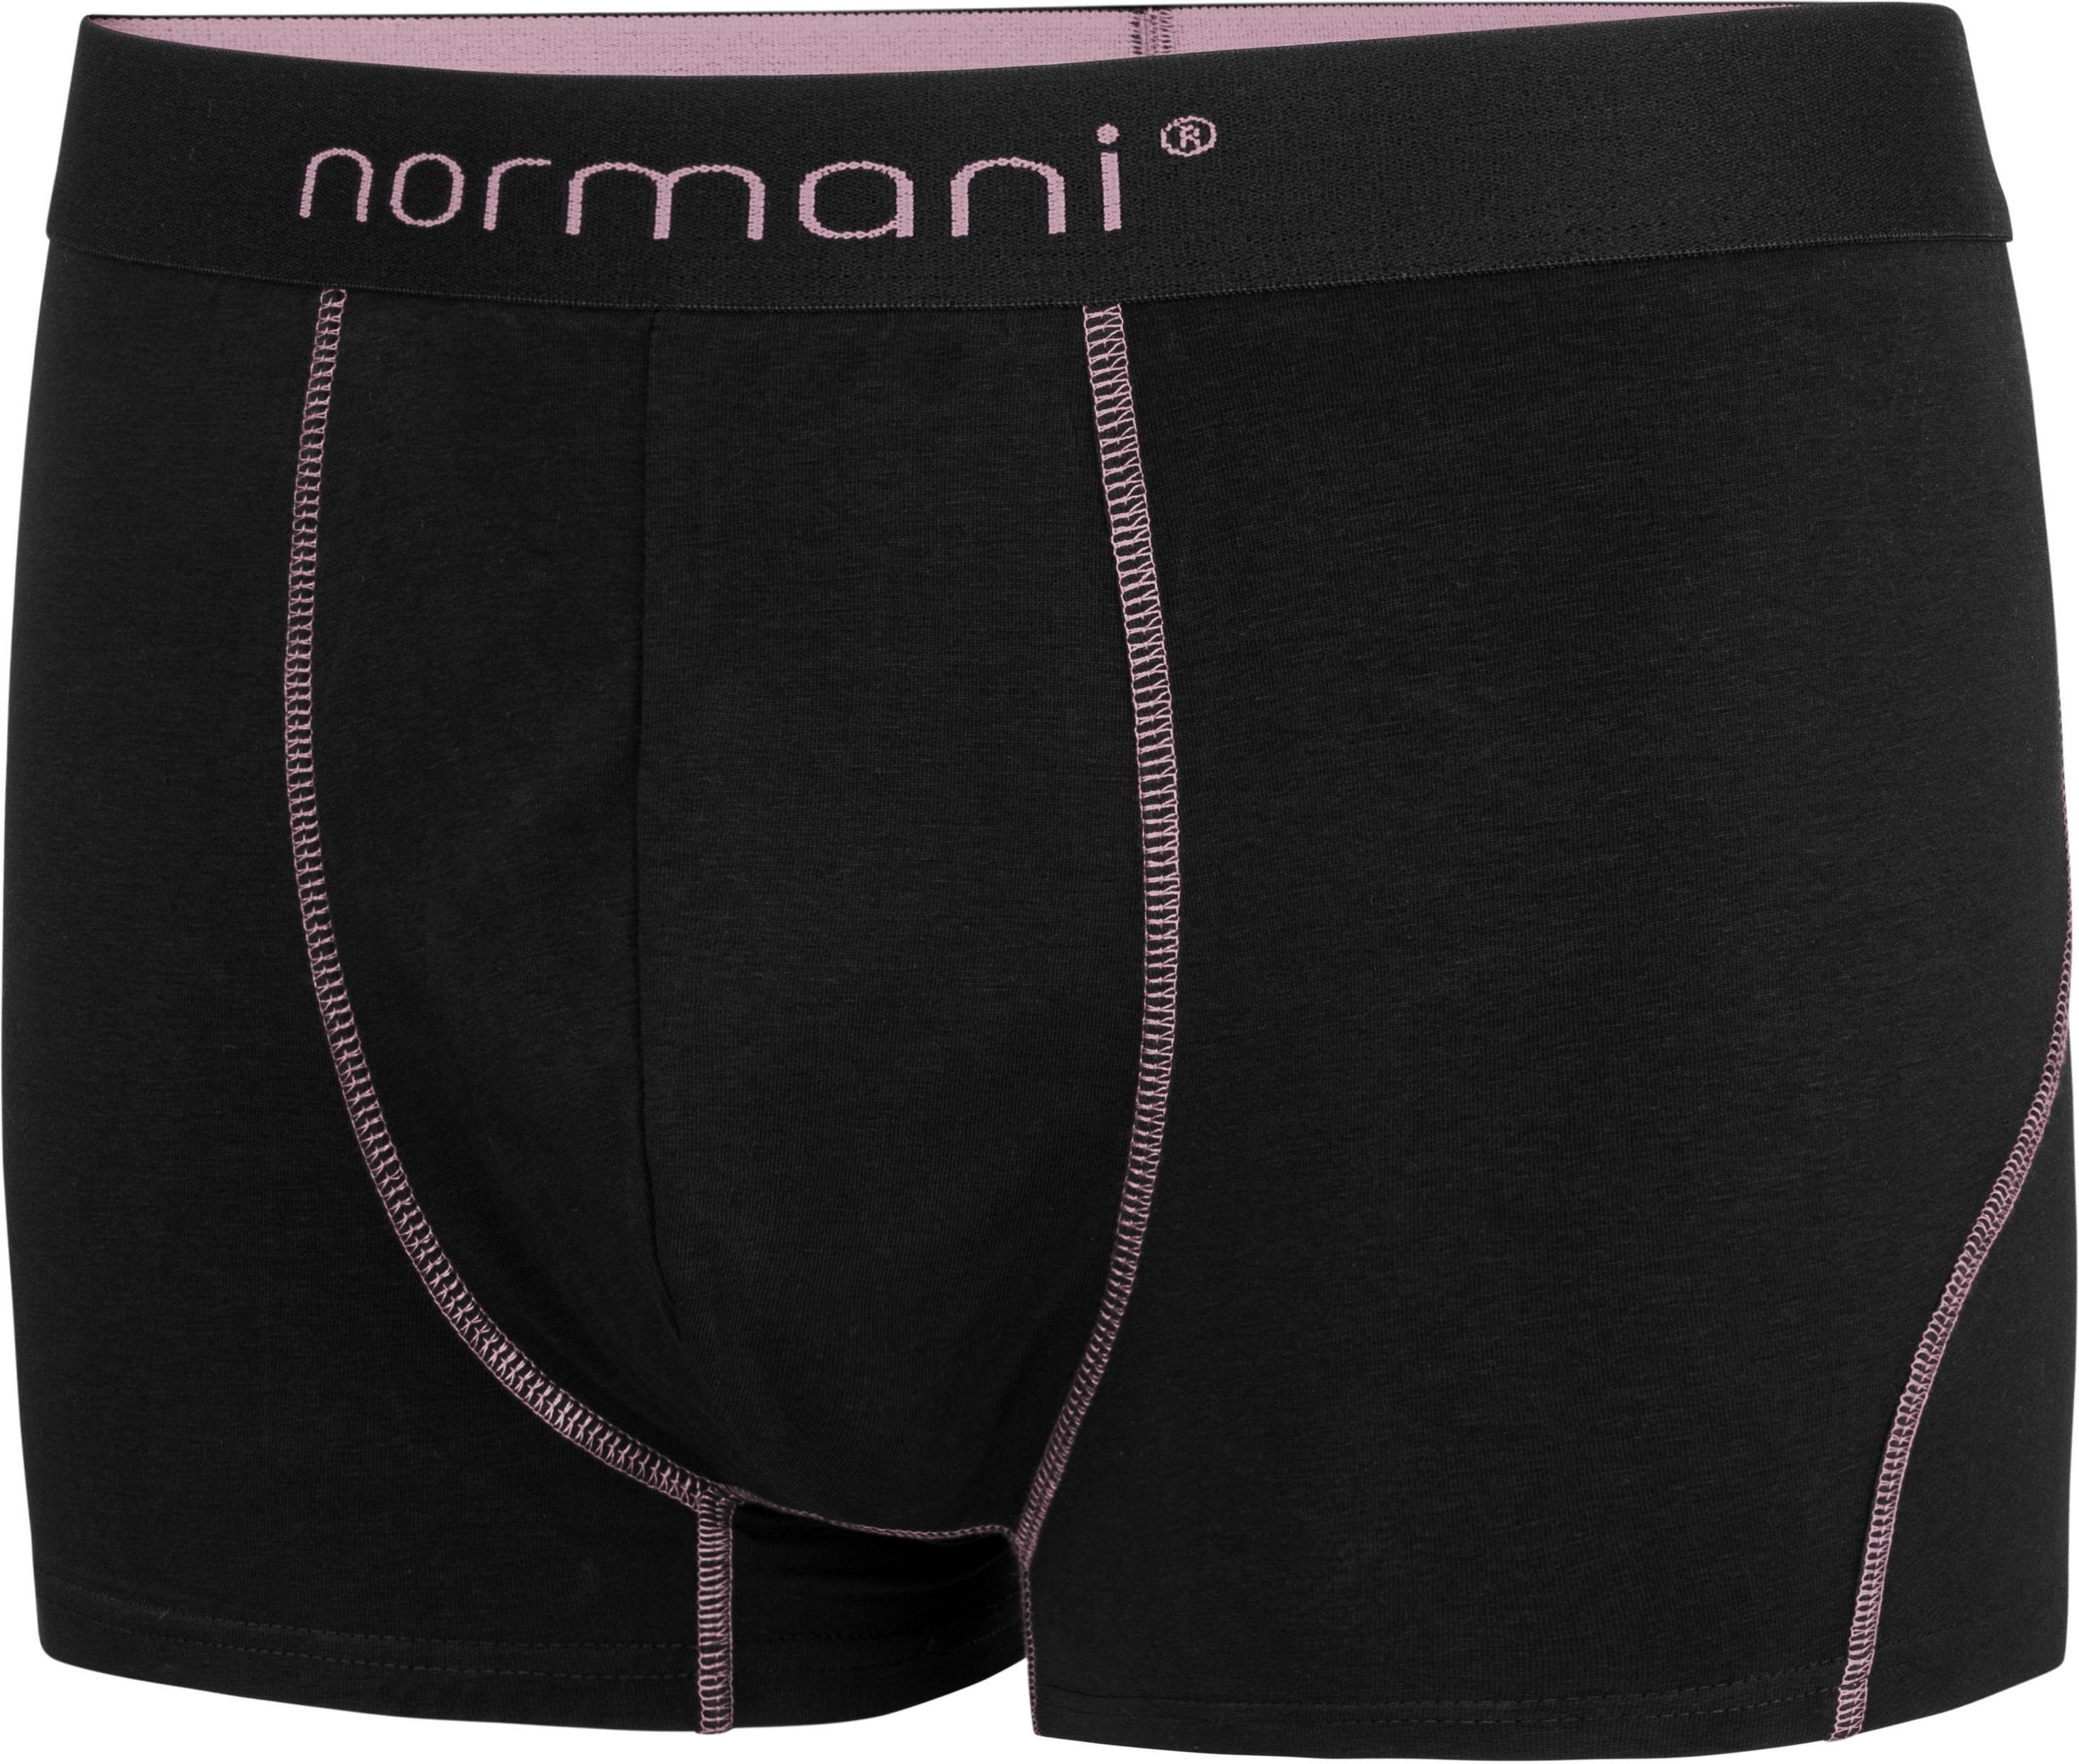 normani Boxershorts 6 Baumwolle Boxershorts aus atmungsaktiver Baumwolle Lachs für Unterhose aus Männer weiche